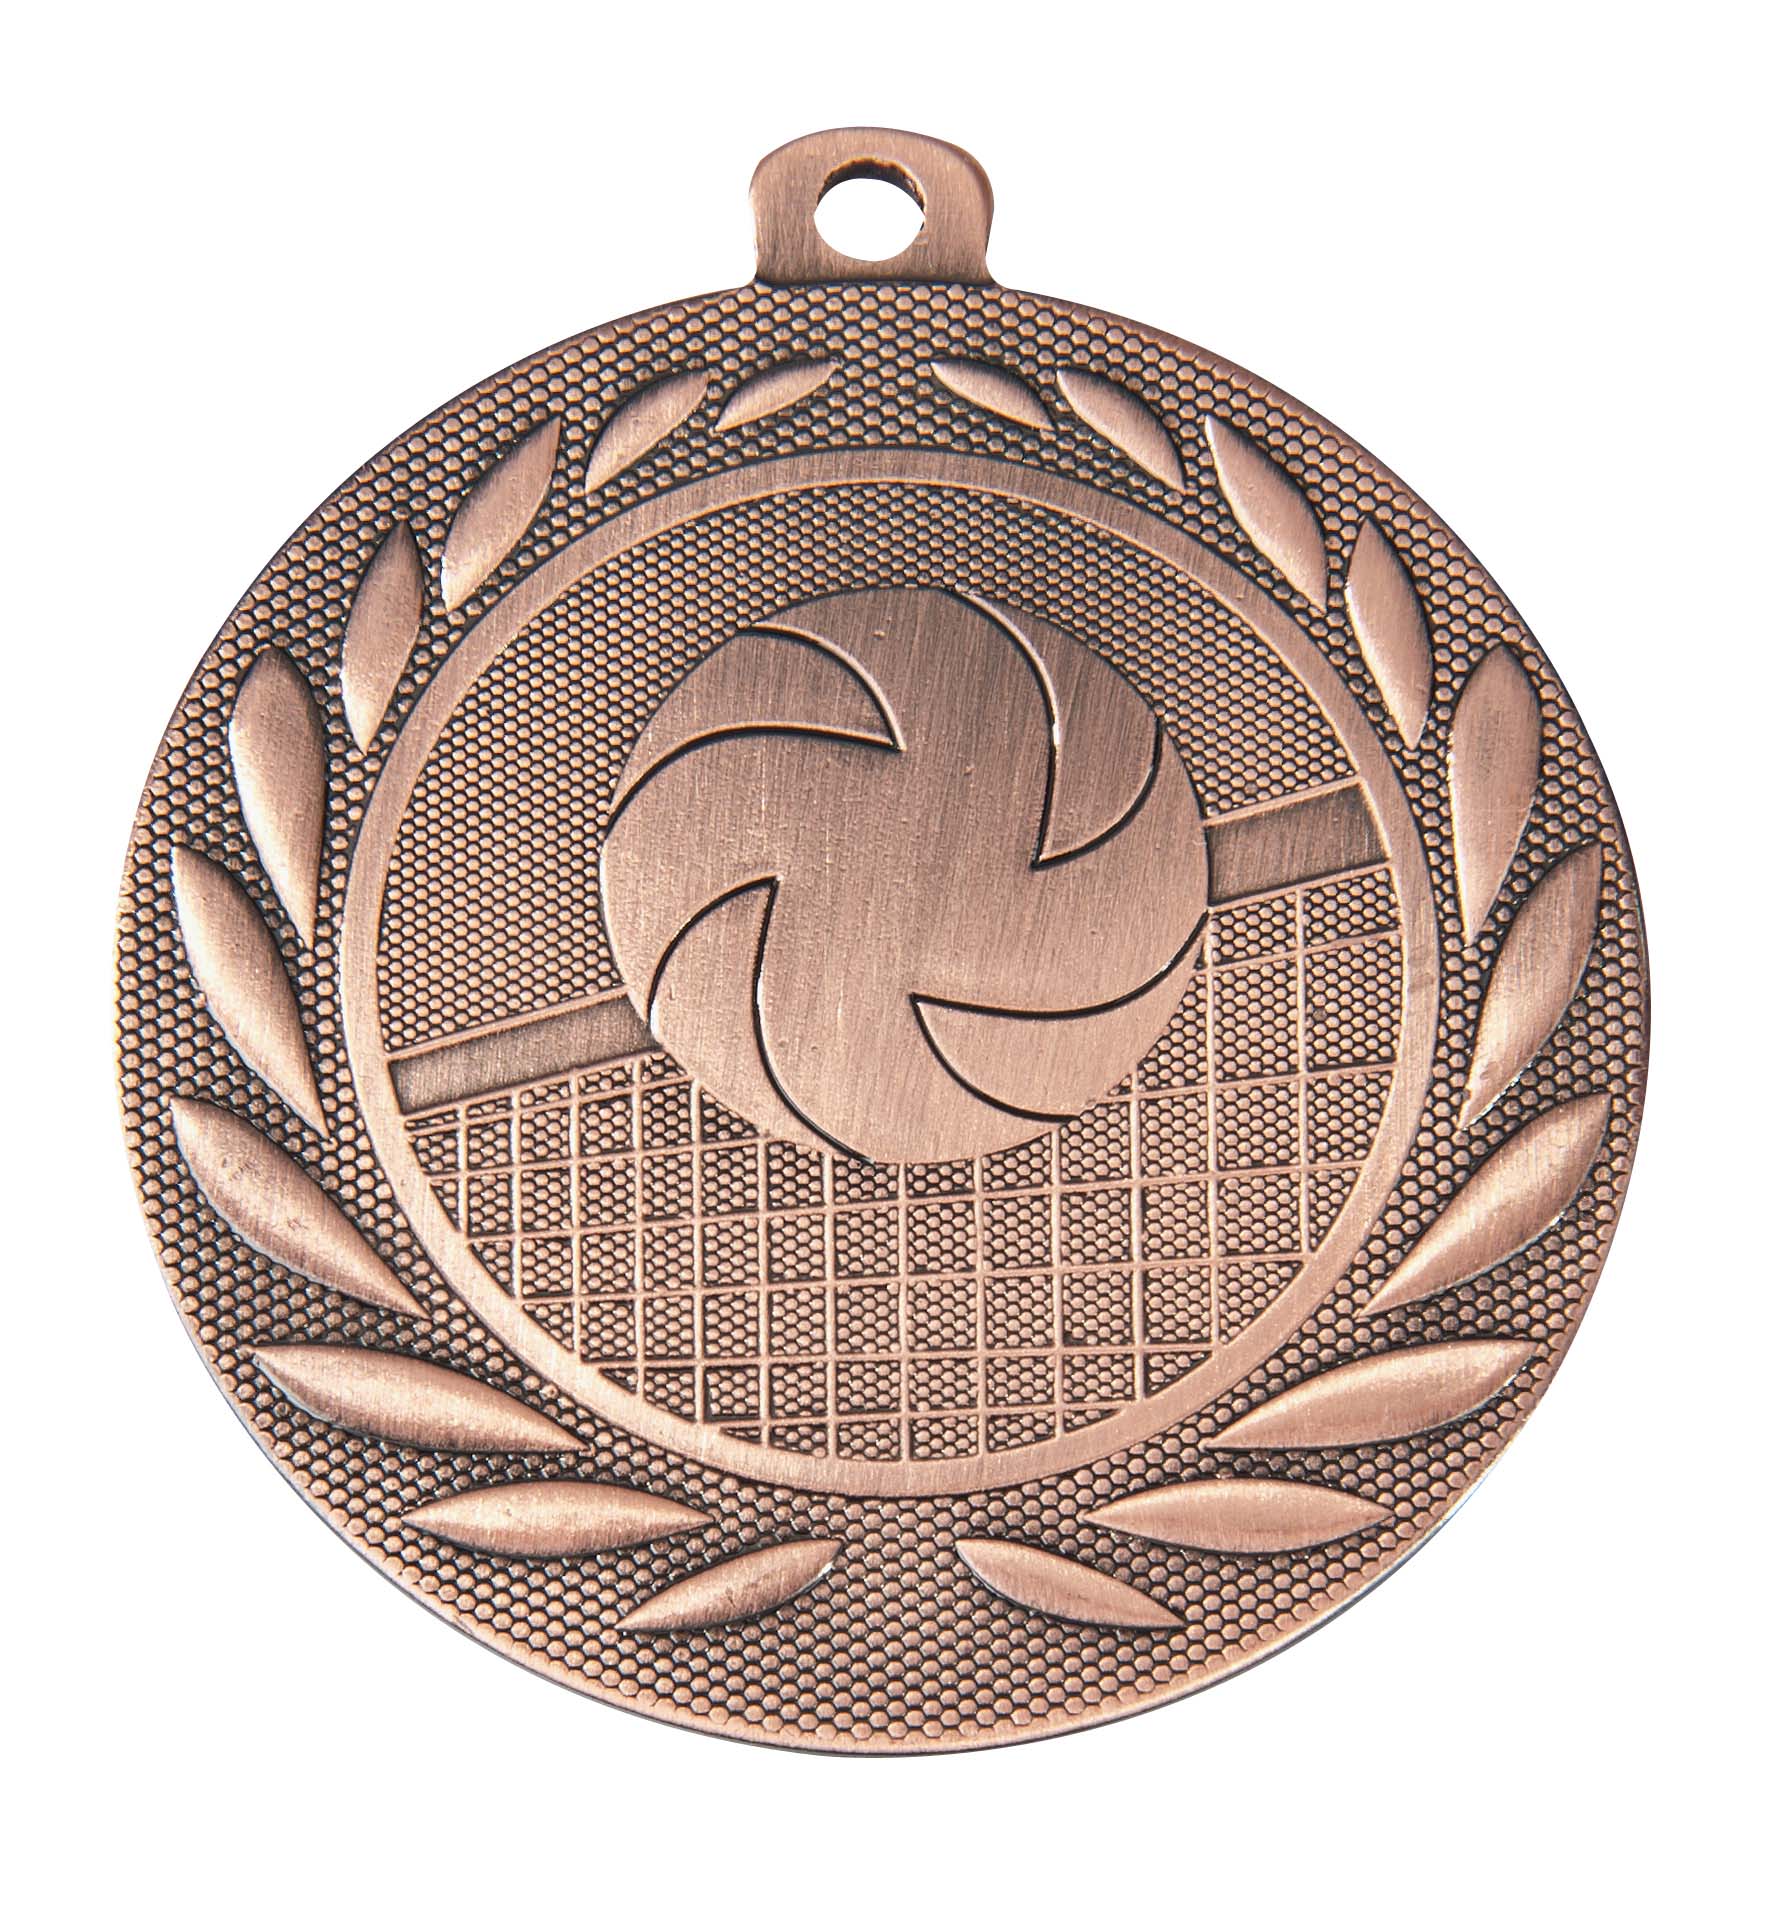 Volleyball-Medaille DI5000N inkl. Band und Beschriftung Bronze Fertig montiert gegen Aufpreis